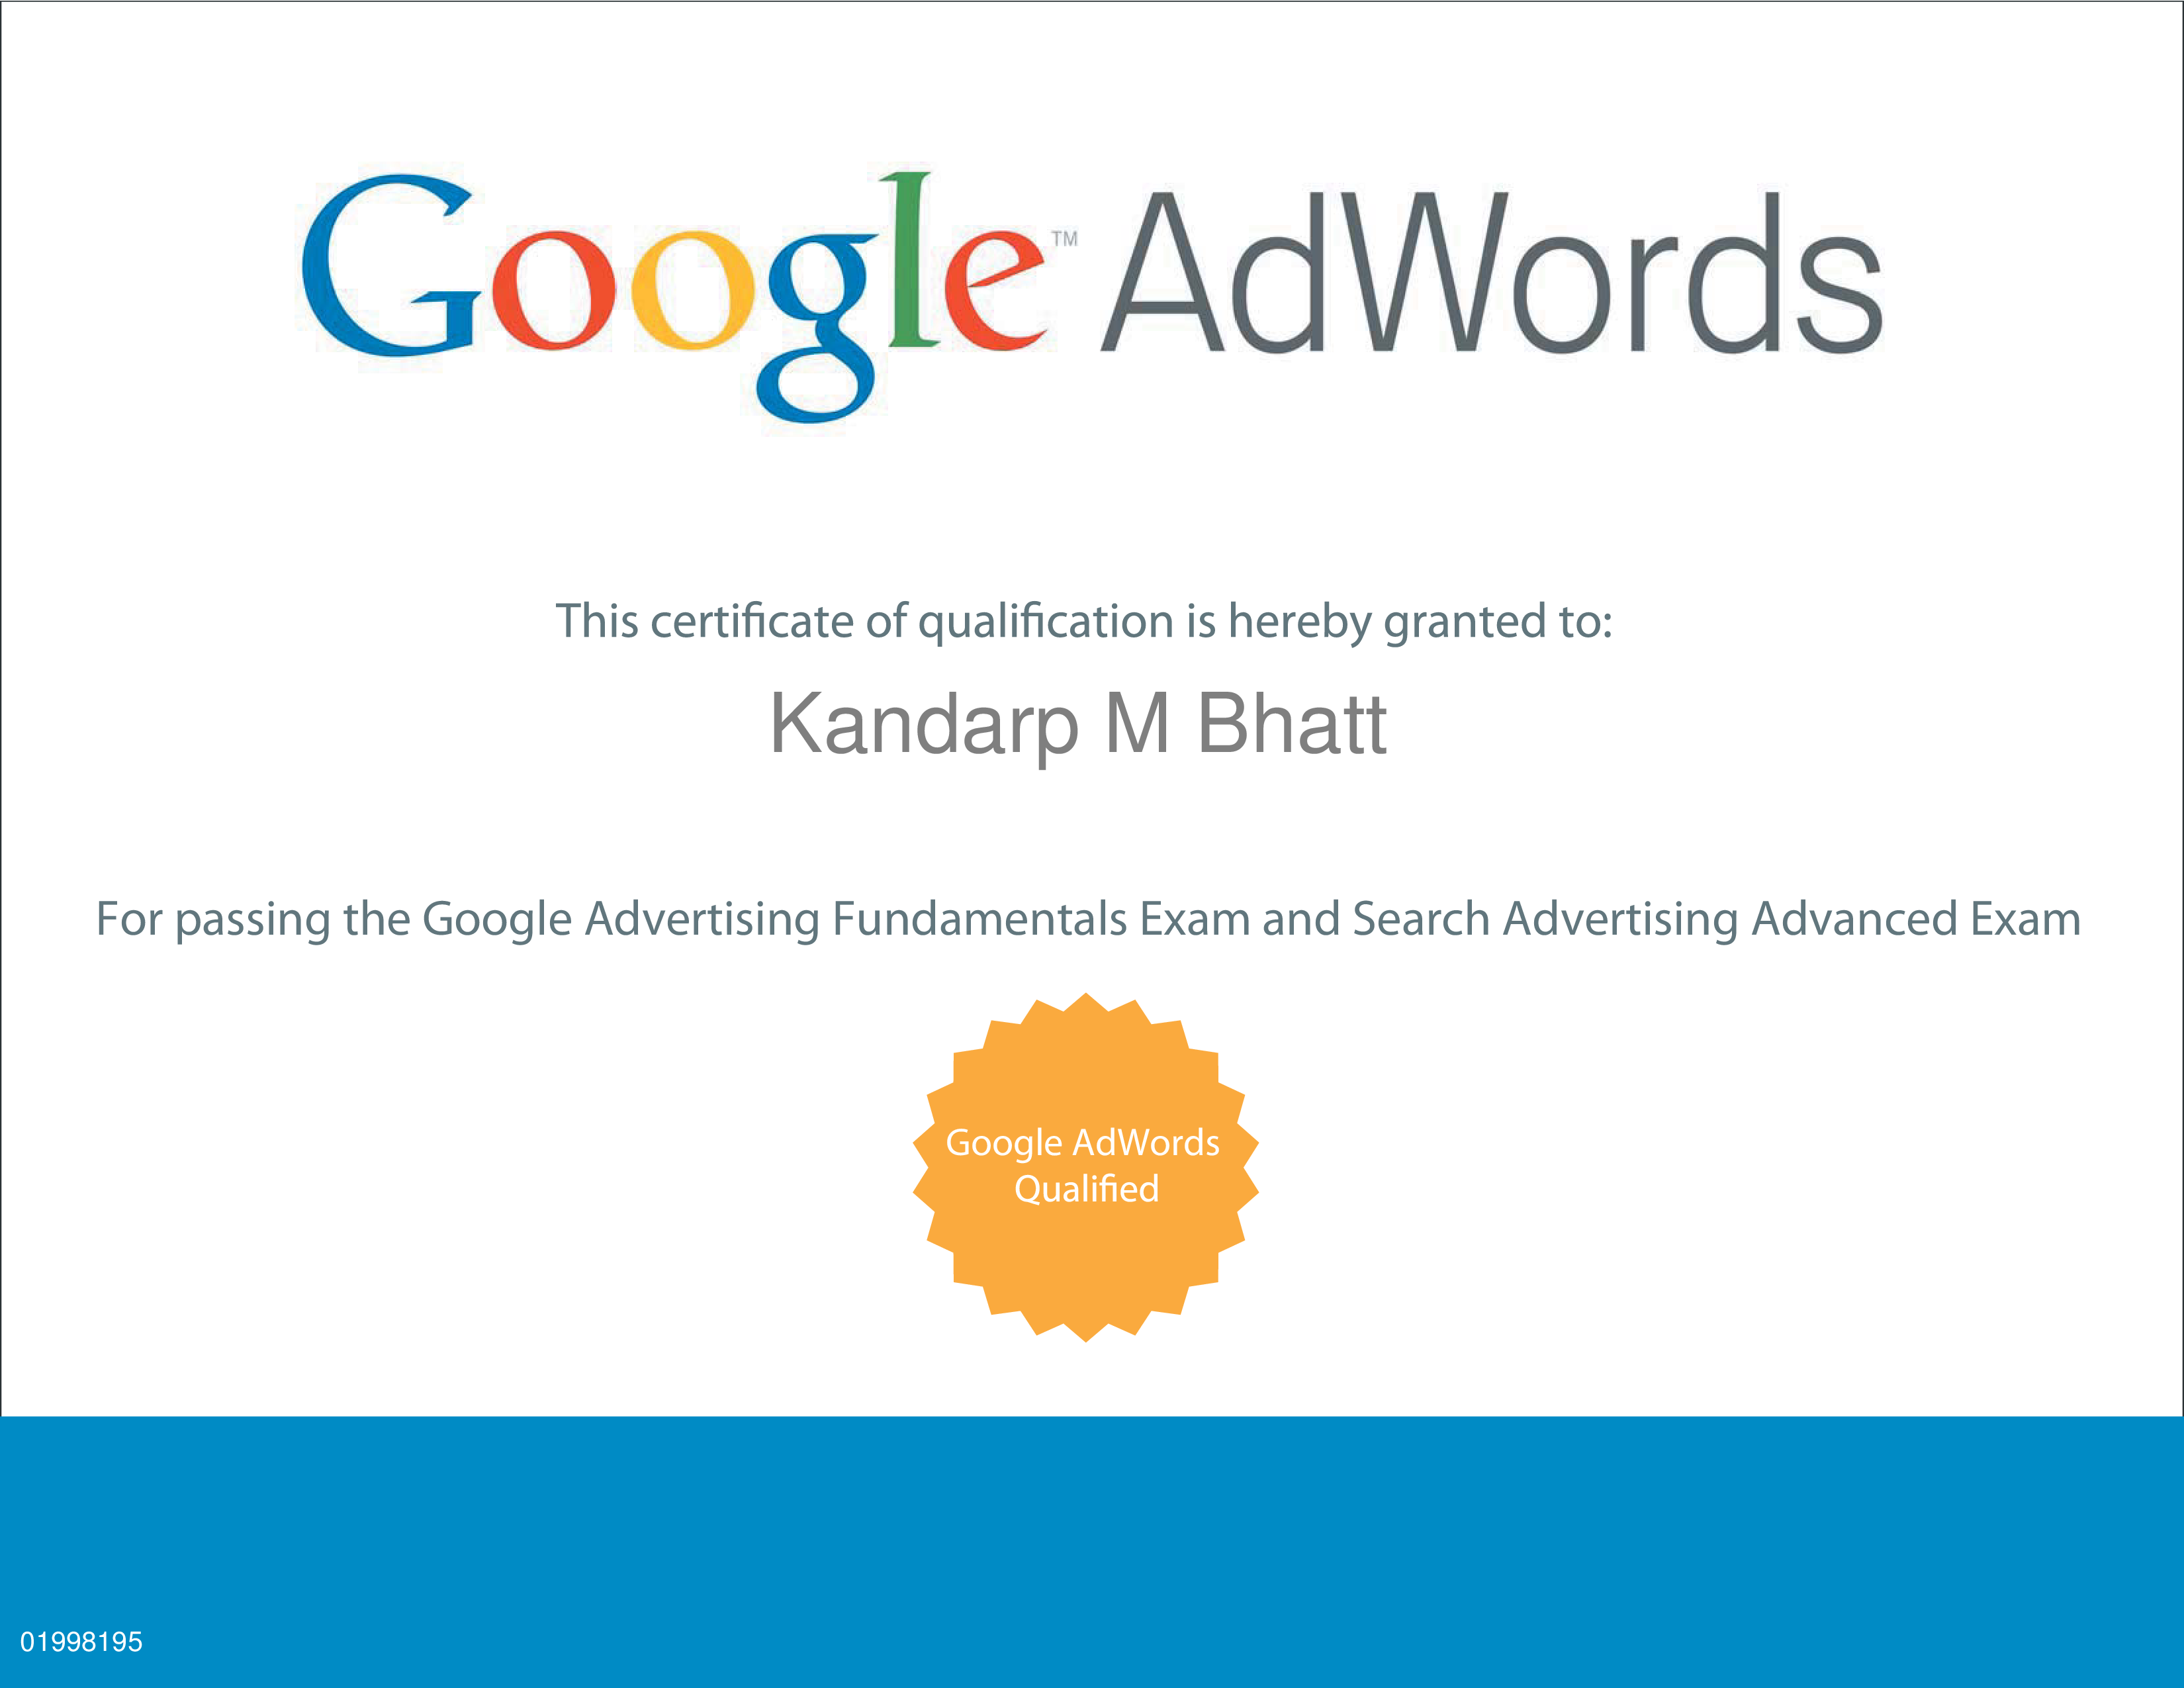 Should I go for New Google Adwords Partner Certification?